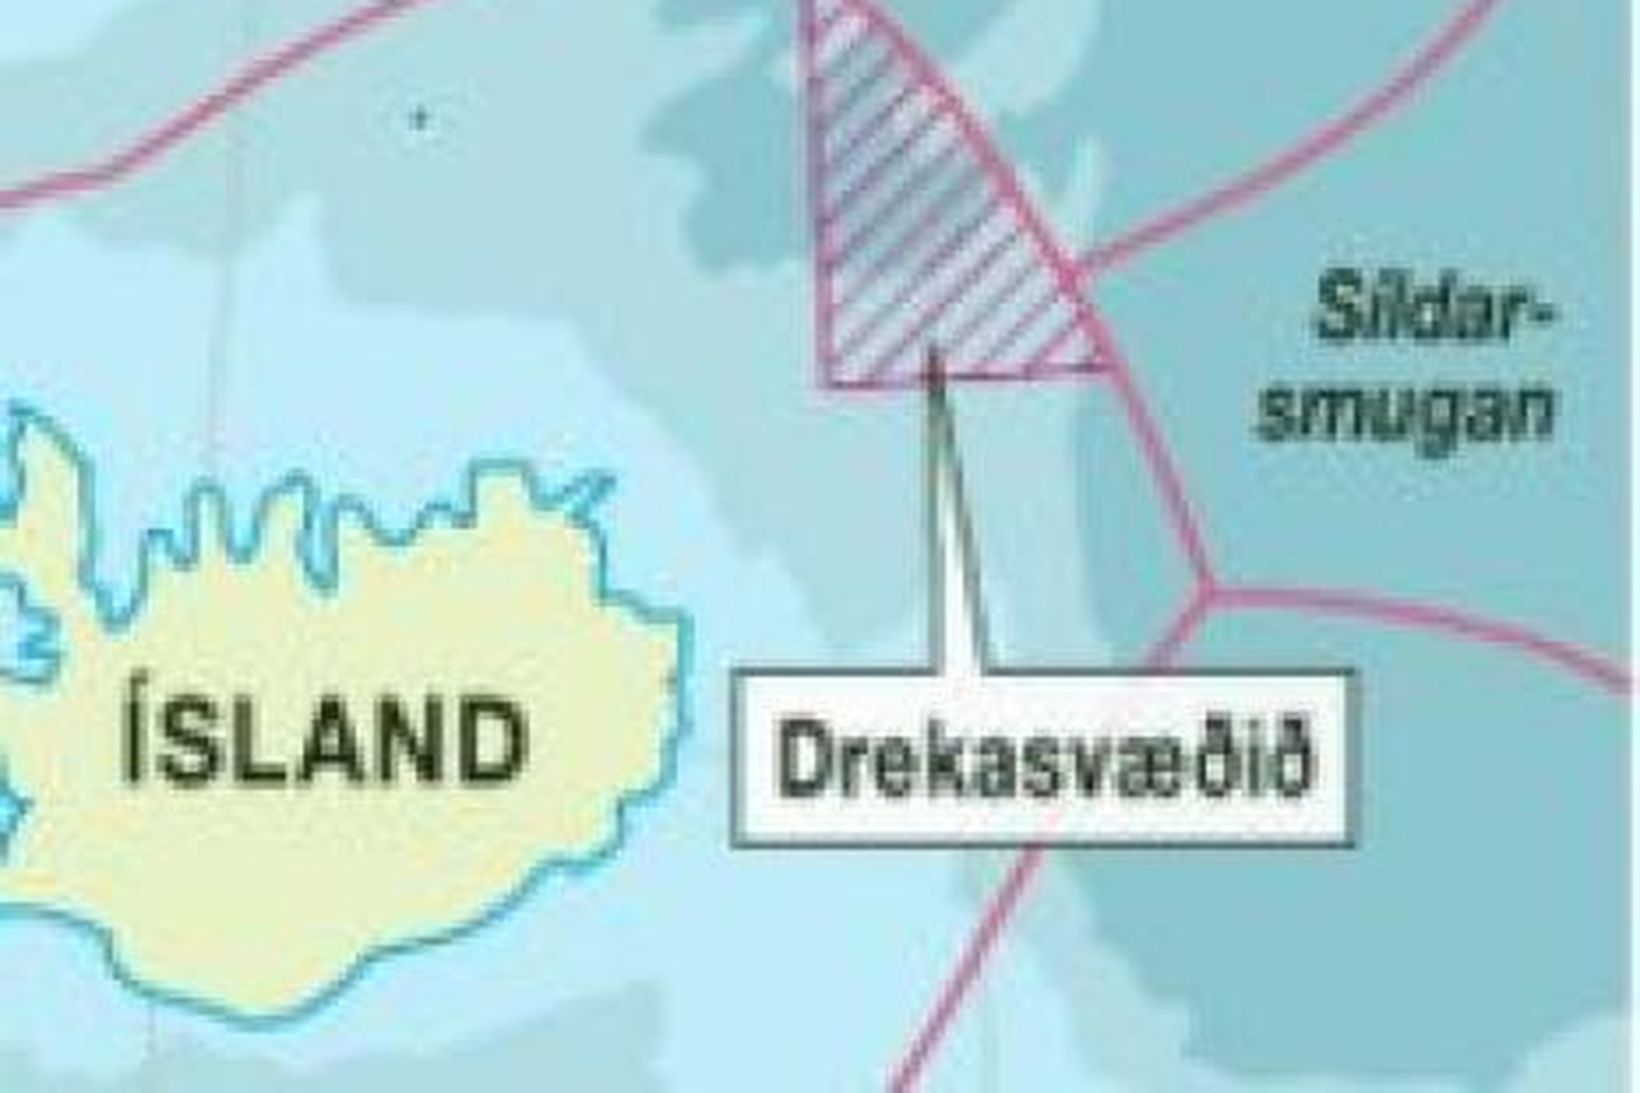 Drekasvæðið.Útboð sérleyfa til olíurannsókna á Drekasvæðinu rennur út 2. apríl.